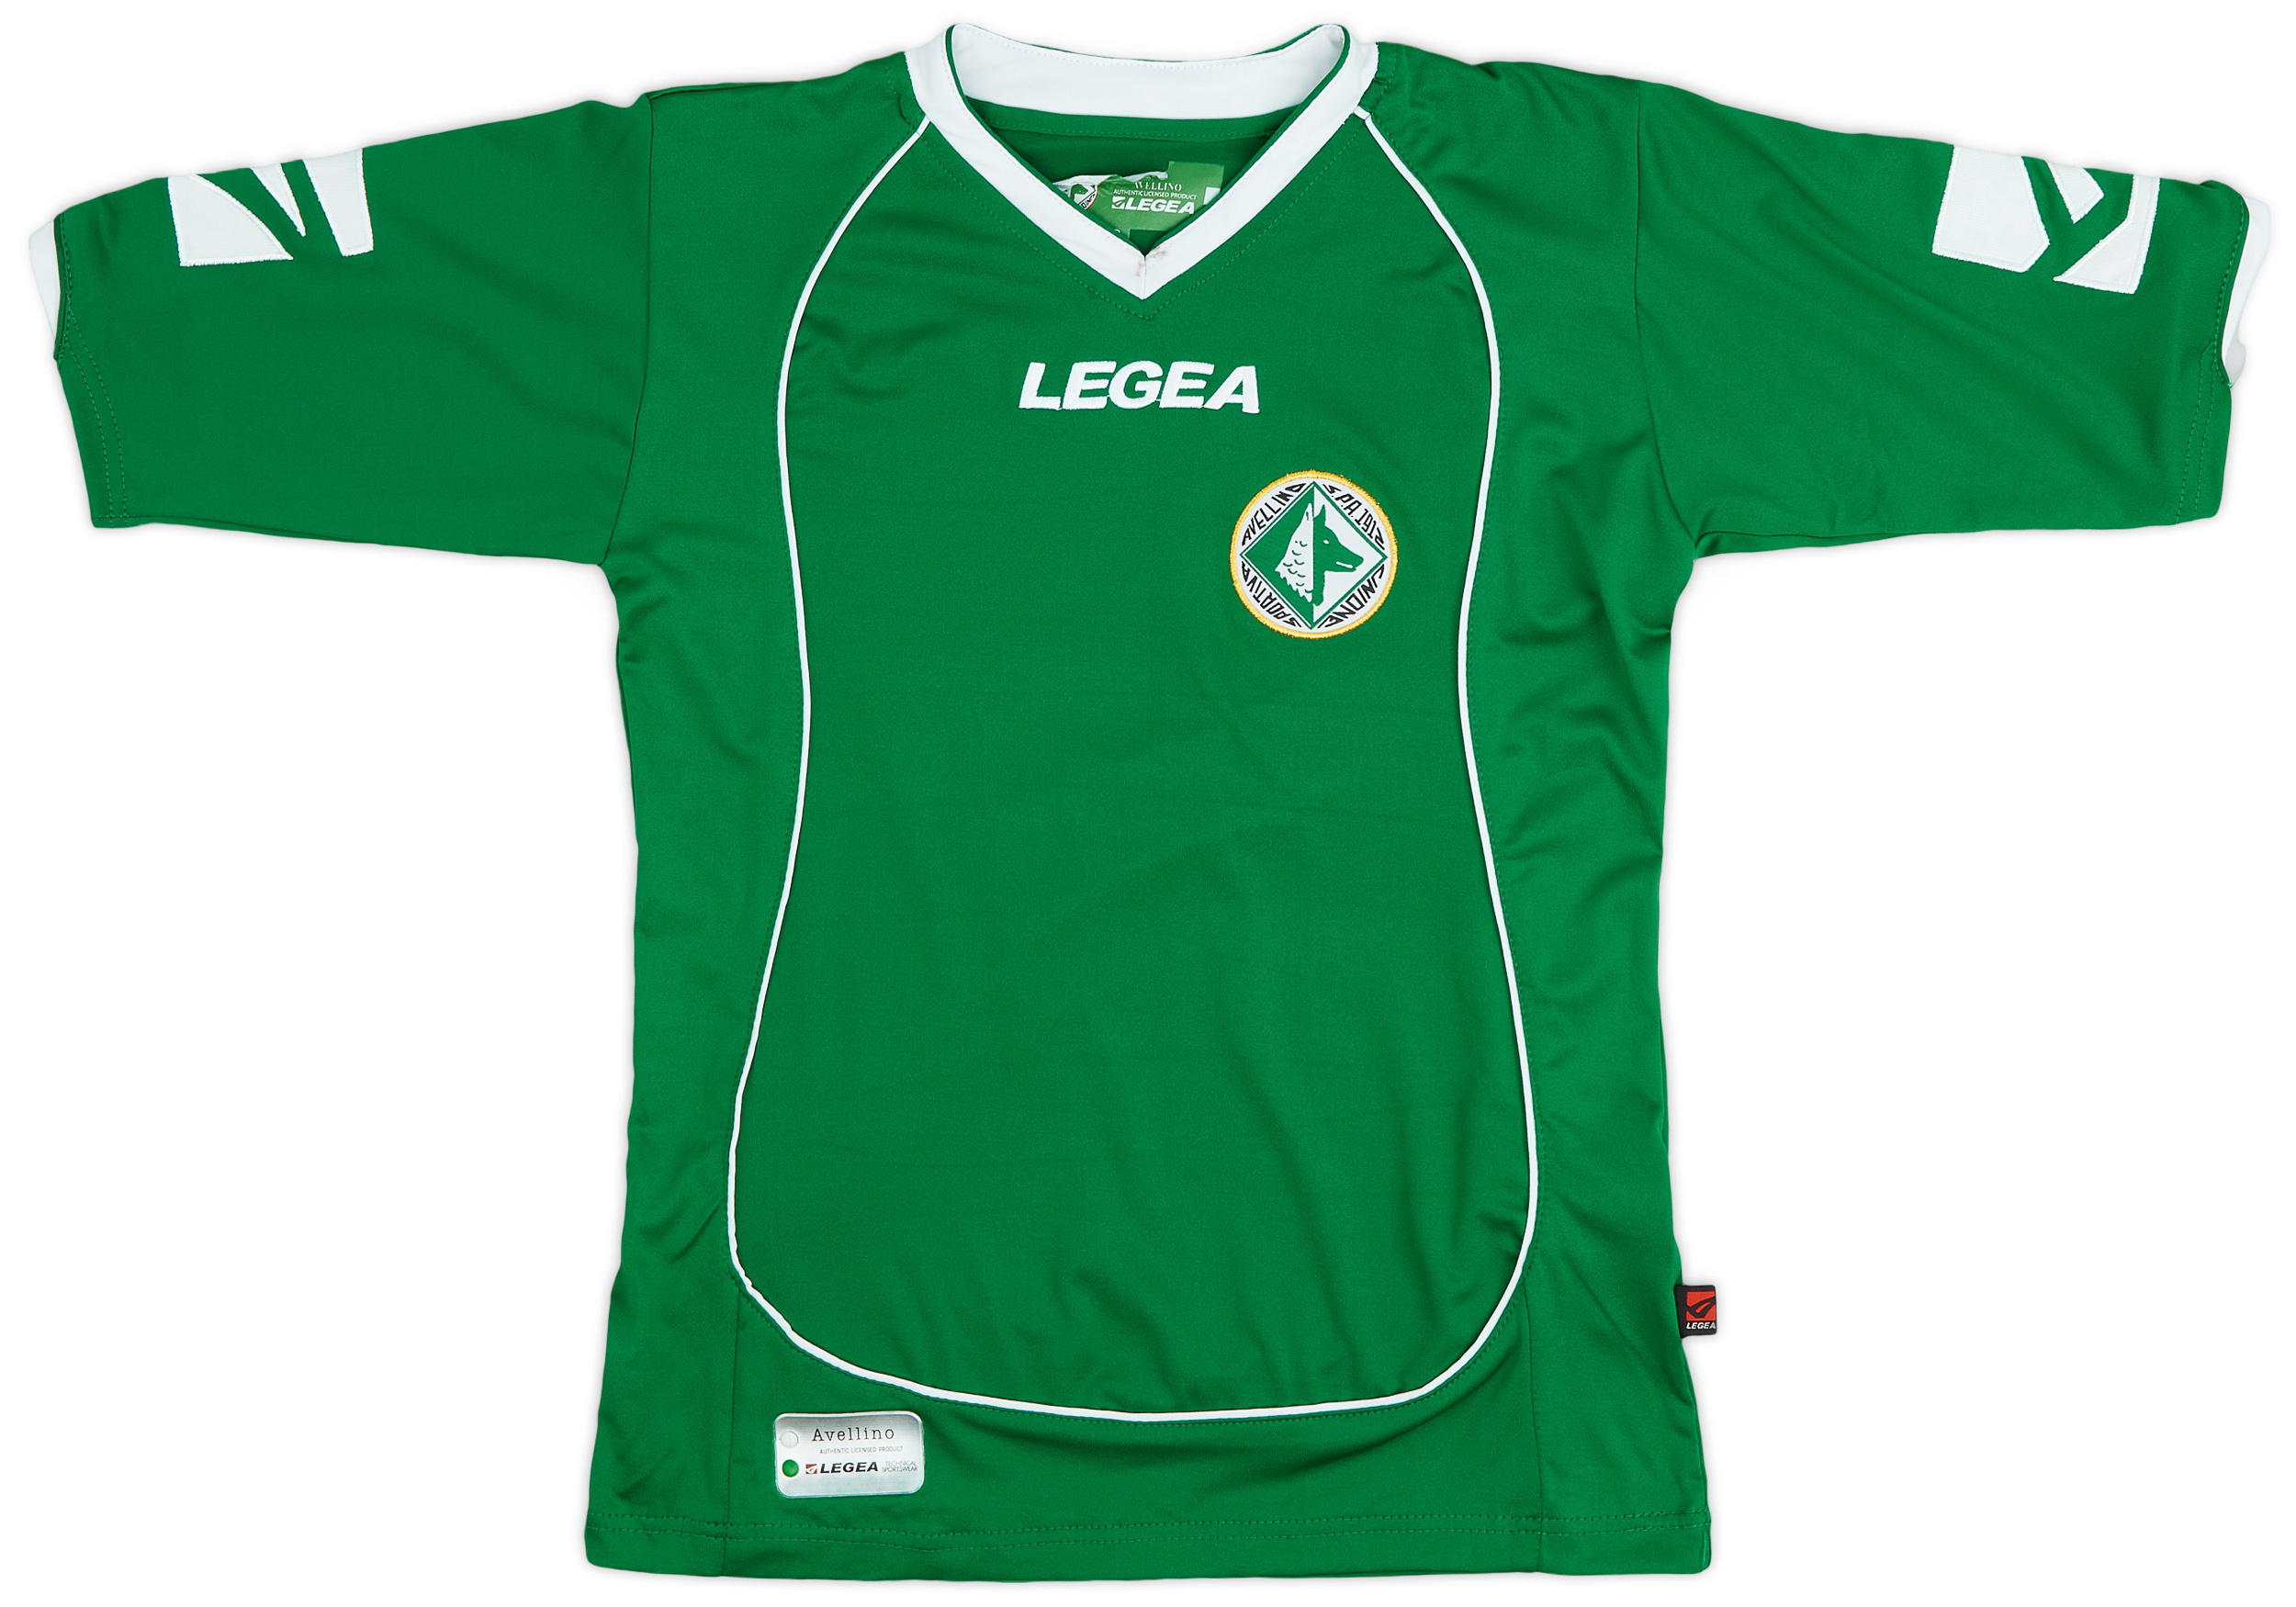 2007-08 Avellino Home Shirt - 8/10 - ()